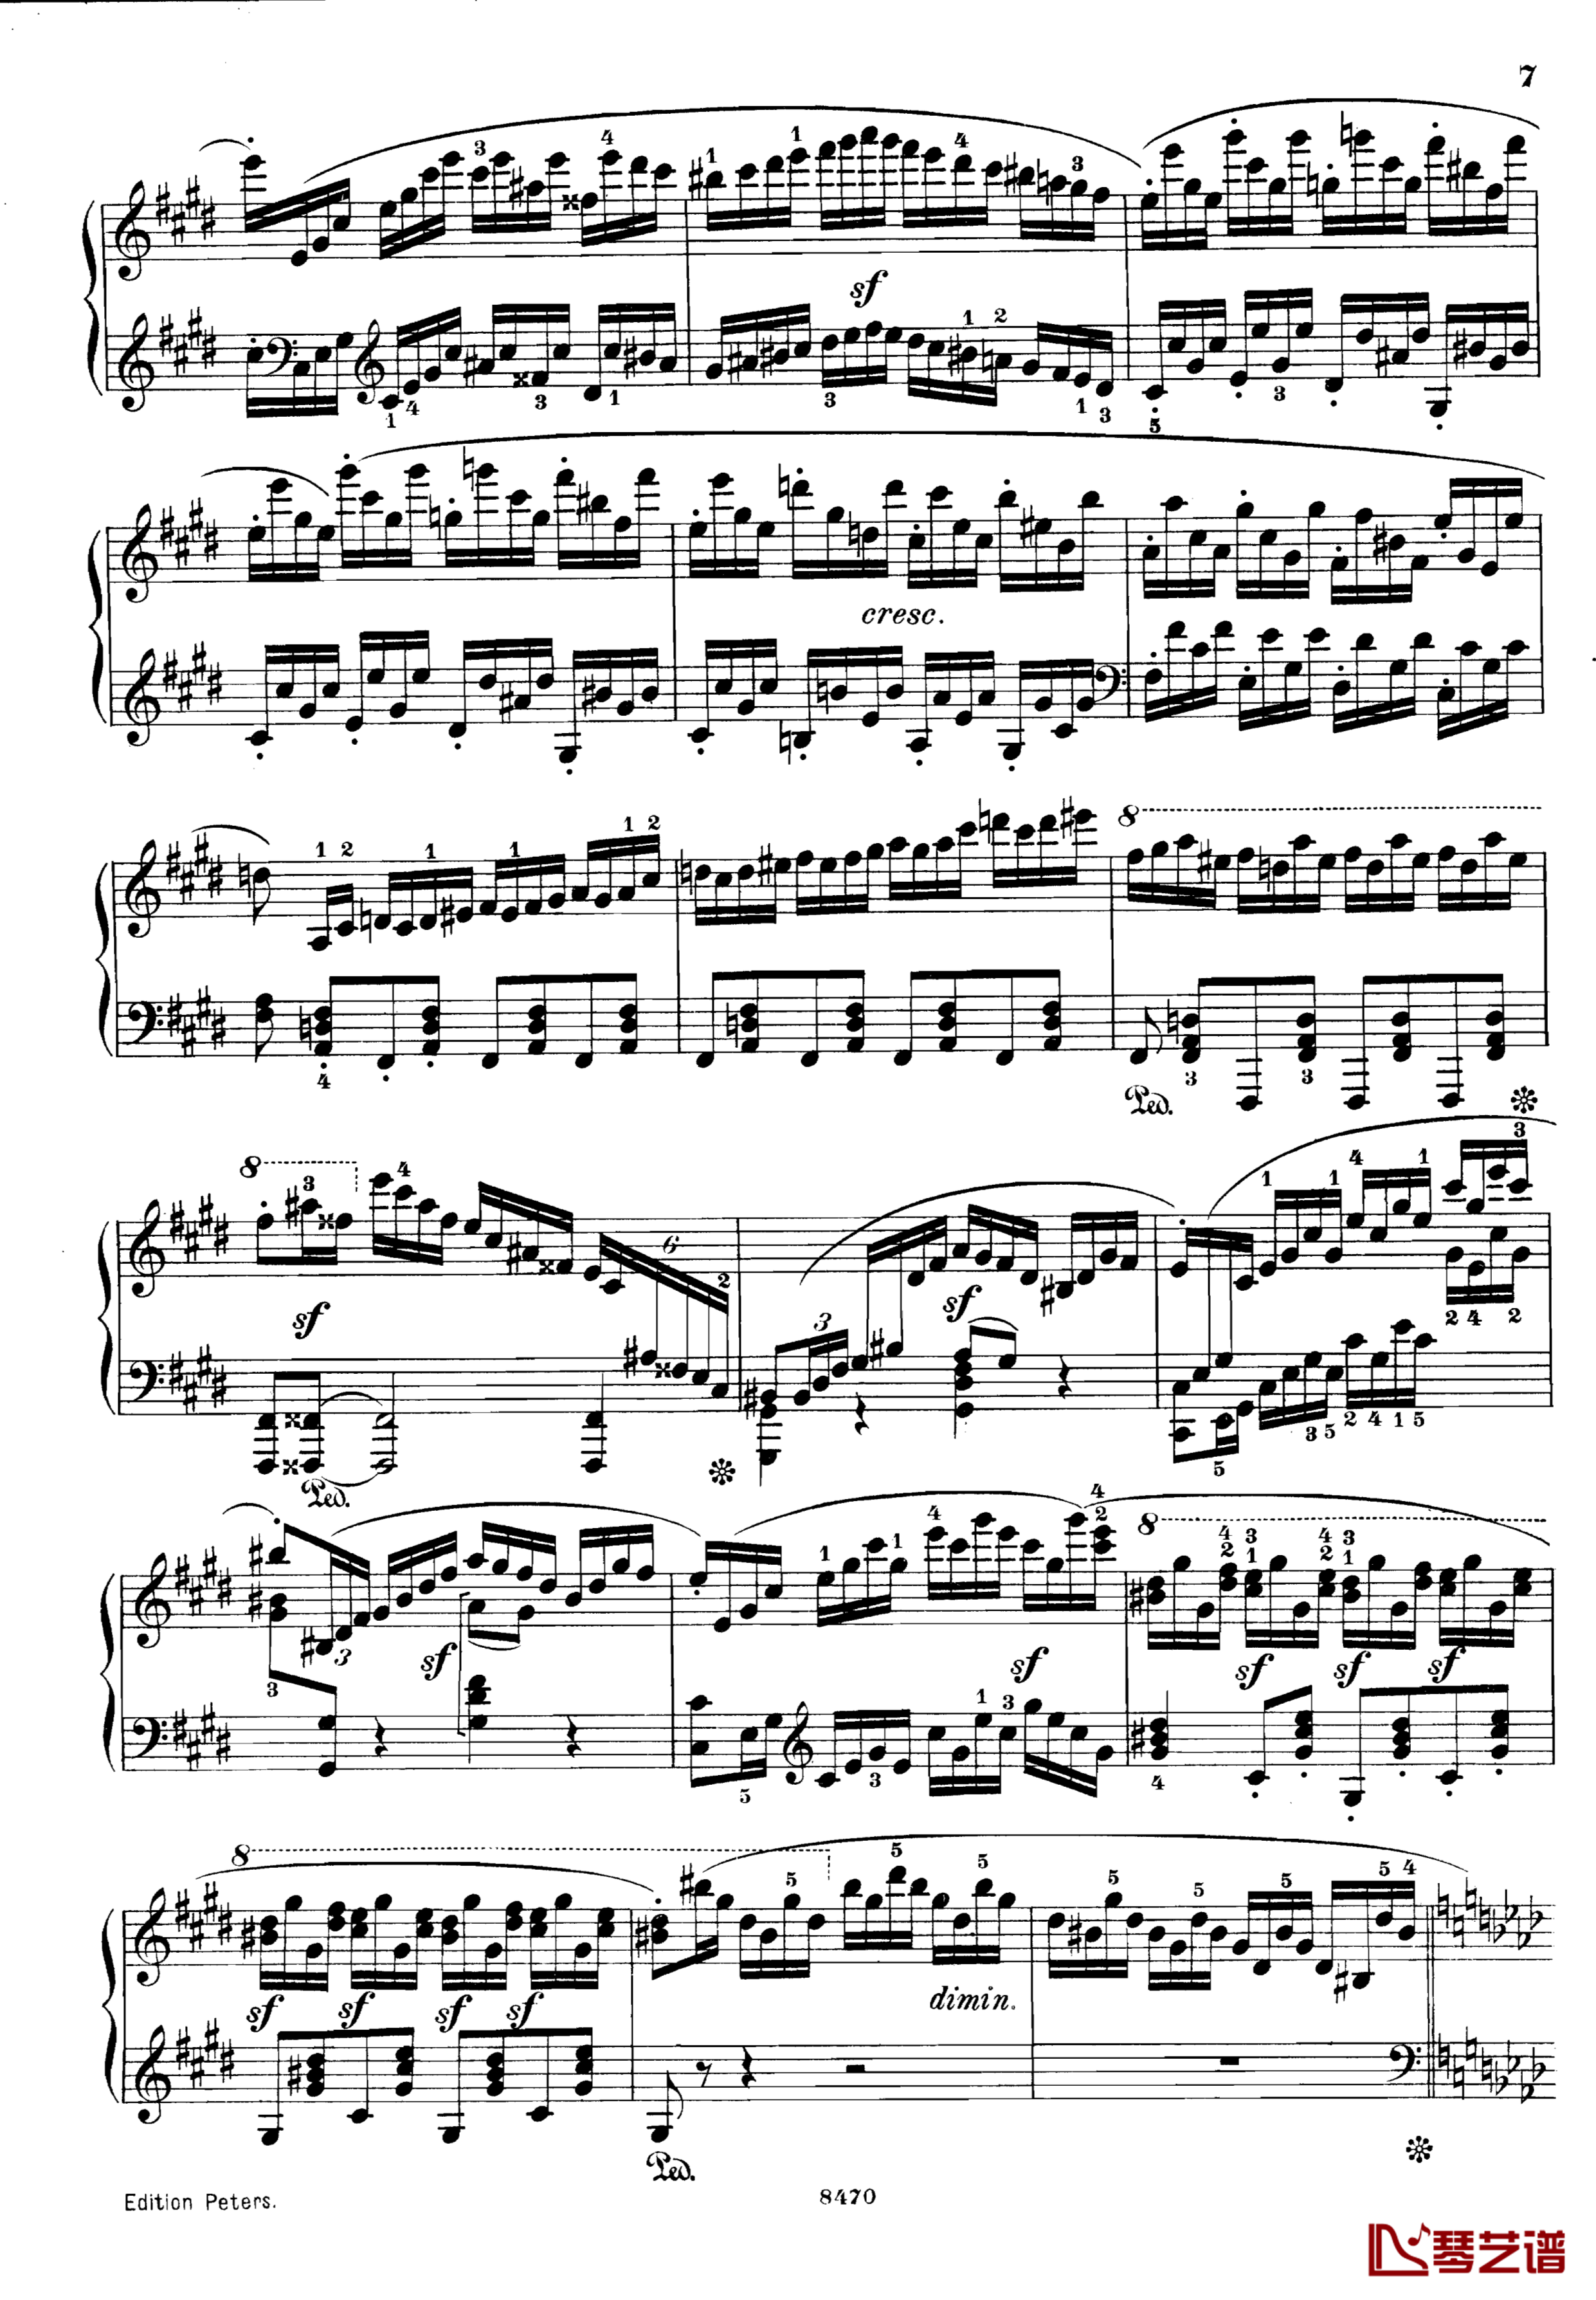 升c小调第三钢琴协奏曲Op.55钢琴谱-克里斯蒂安-里斯7